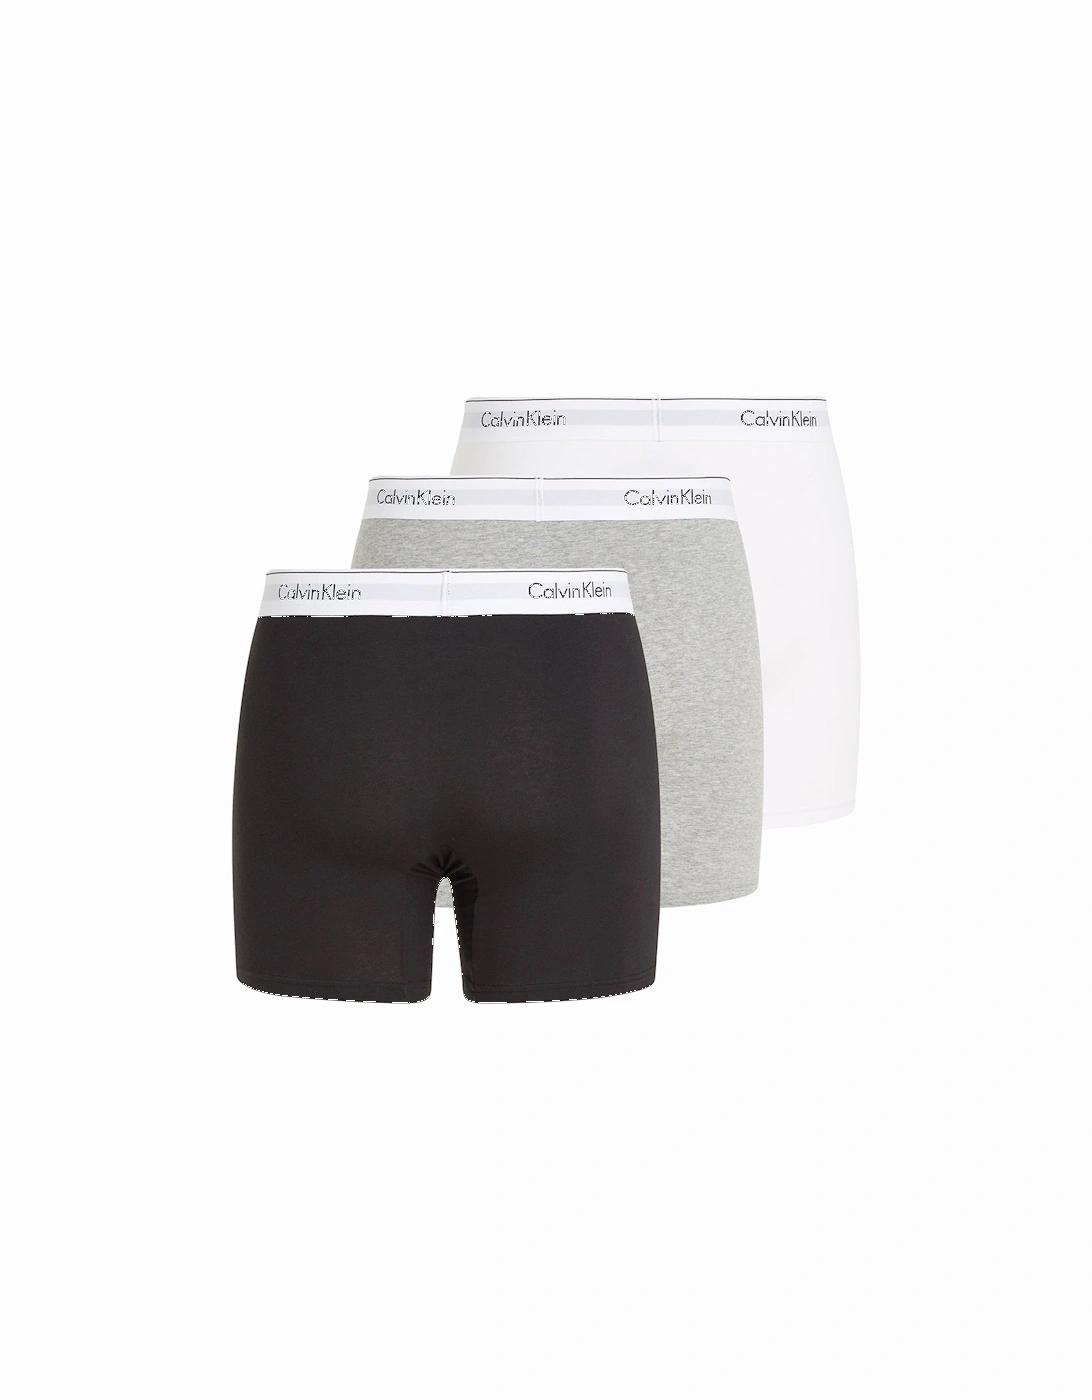 3-Pack Modern Cotton Boxer Briefs, Black/Grey/White